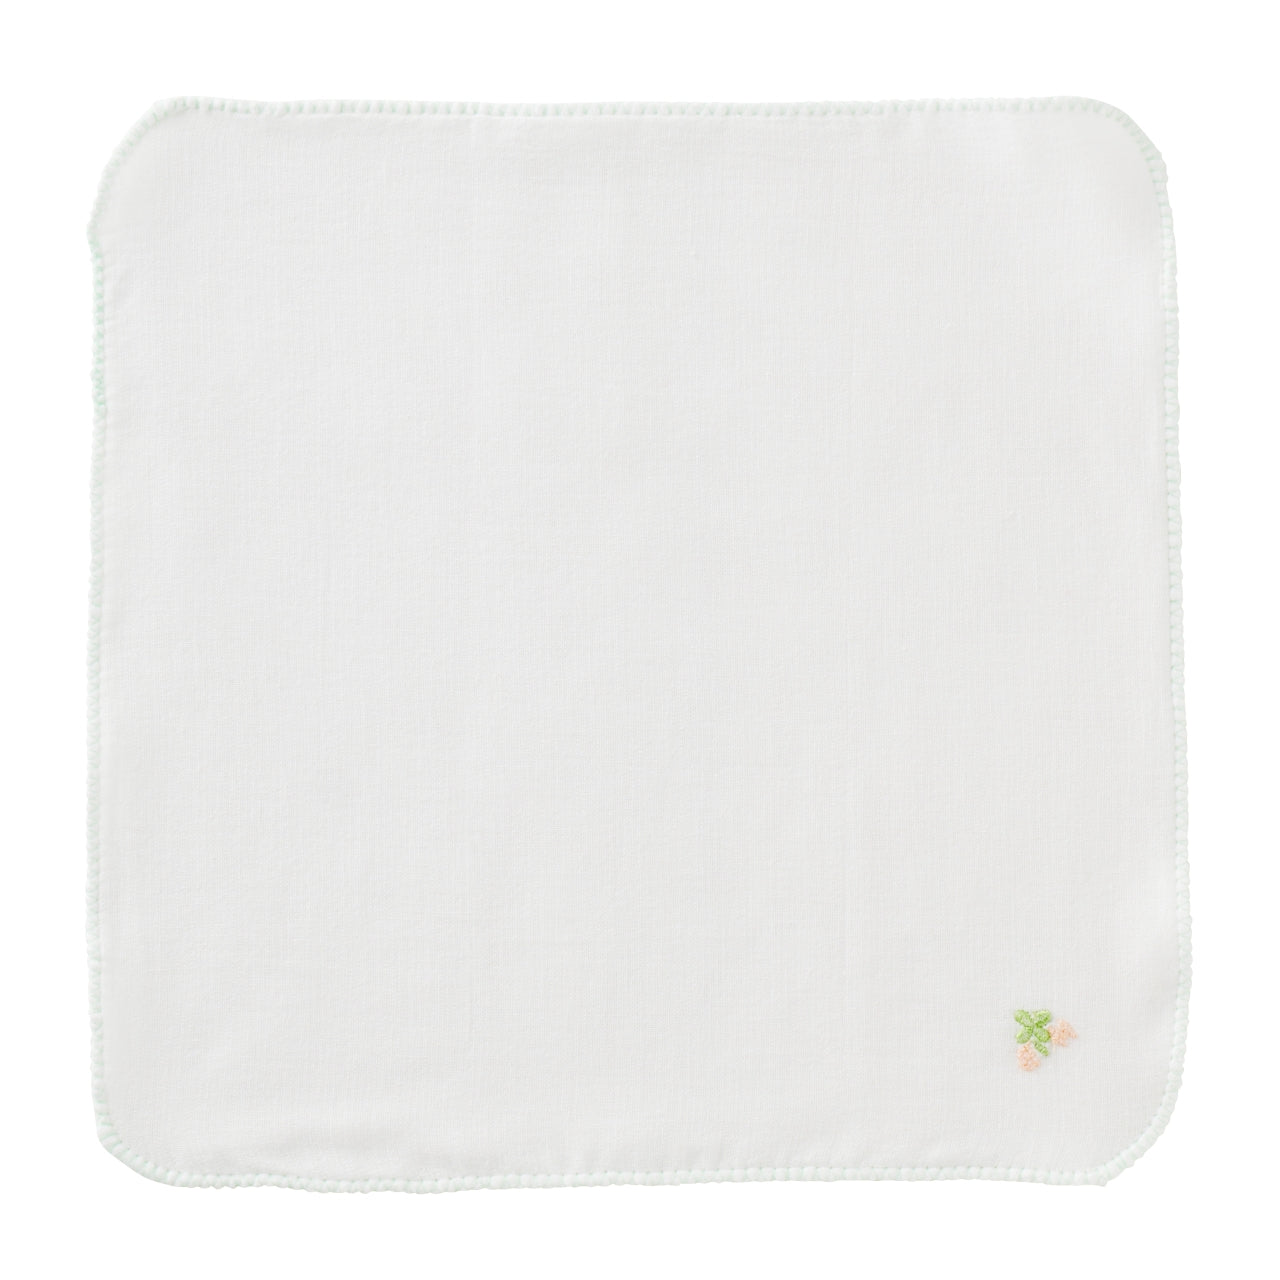 HB-5-Pack Gauze Handkerchiefs